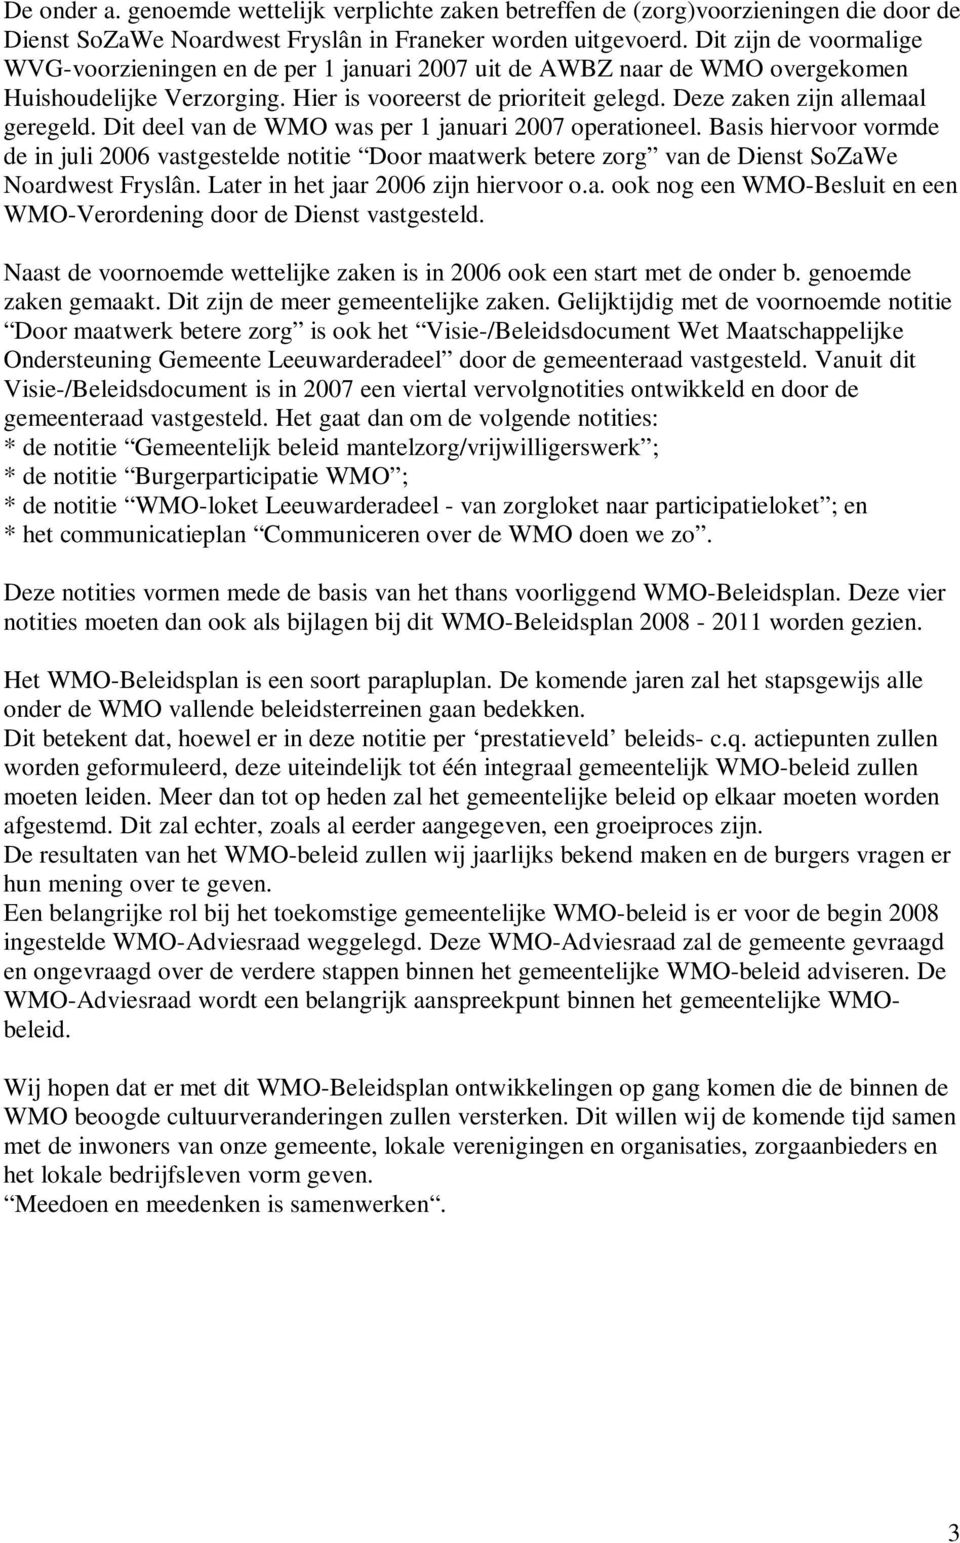 Deze zaken zijn allemaal geregeld. Dit deel van de WMO was per 1 januari 2007 operationeel.